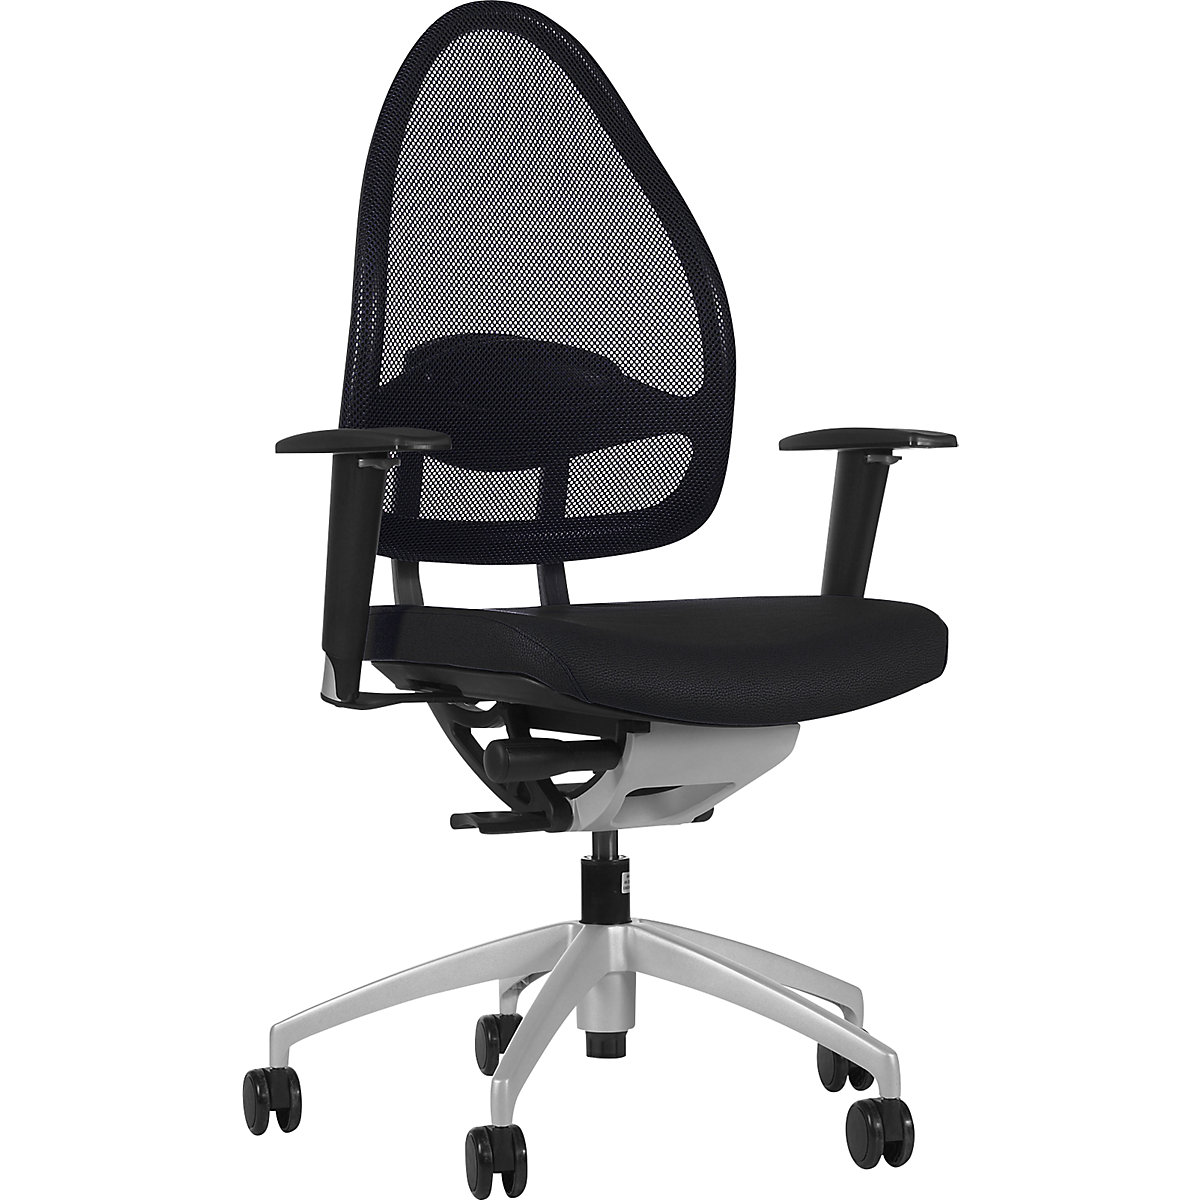 Uredski okretni stolac lijepog oblika, s mrežastim naslonom – Topstar